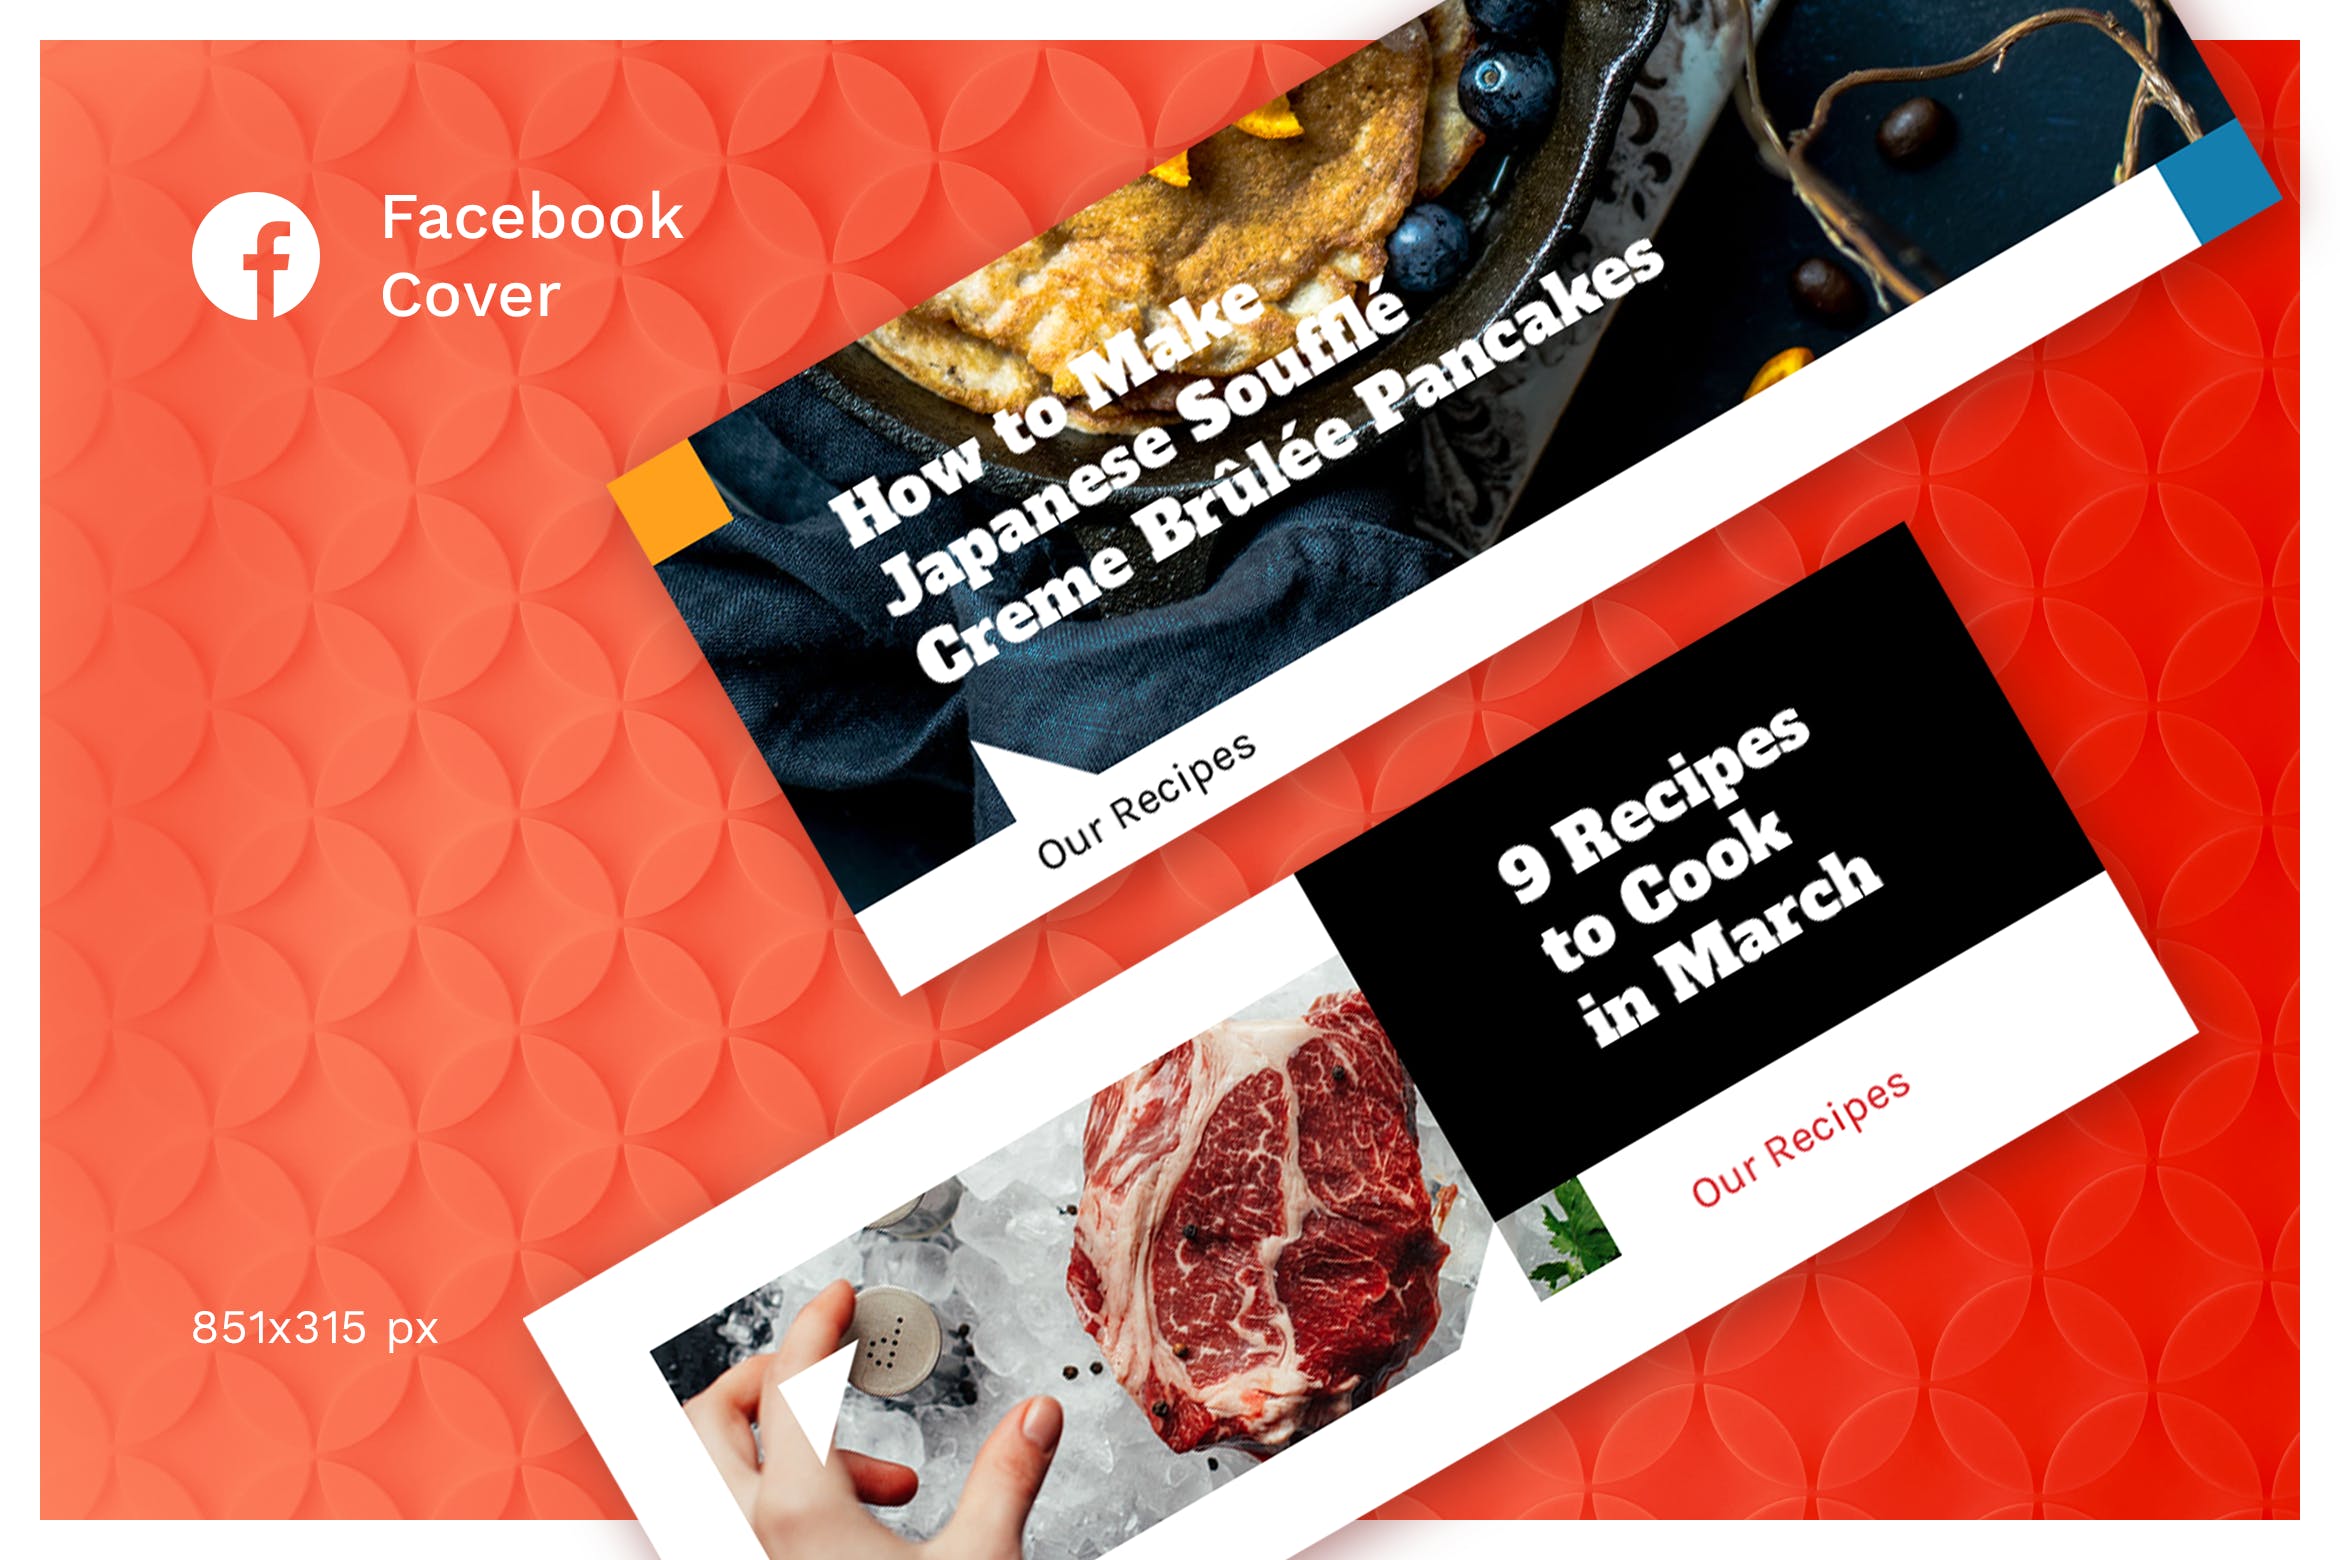 西餐品牌社交推广Facebook封面设计模板第一素材精选 Facebook Cover (Vol.13)插图